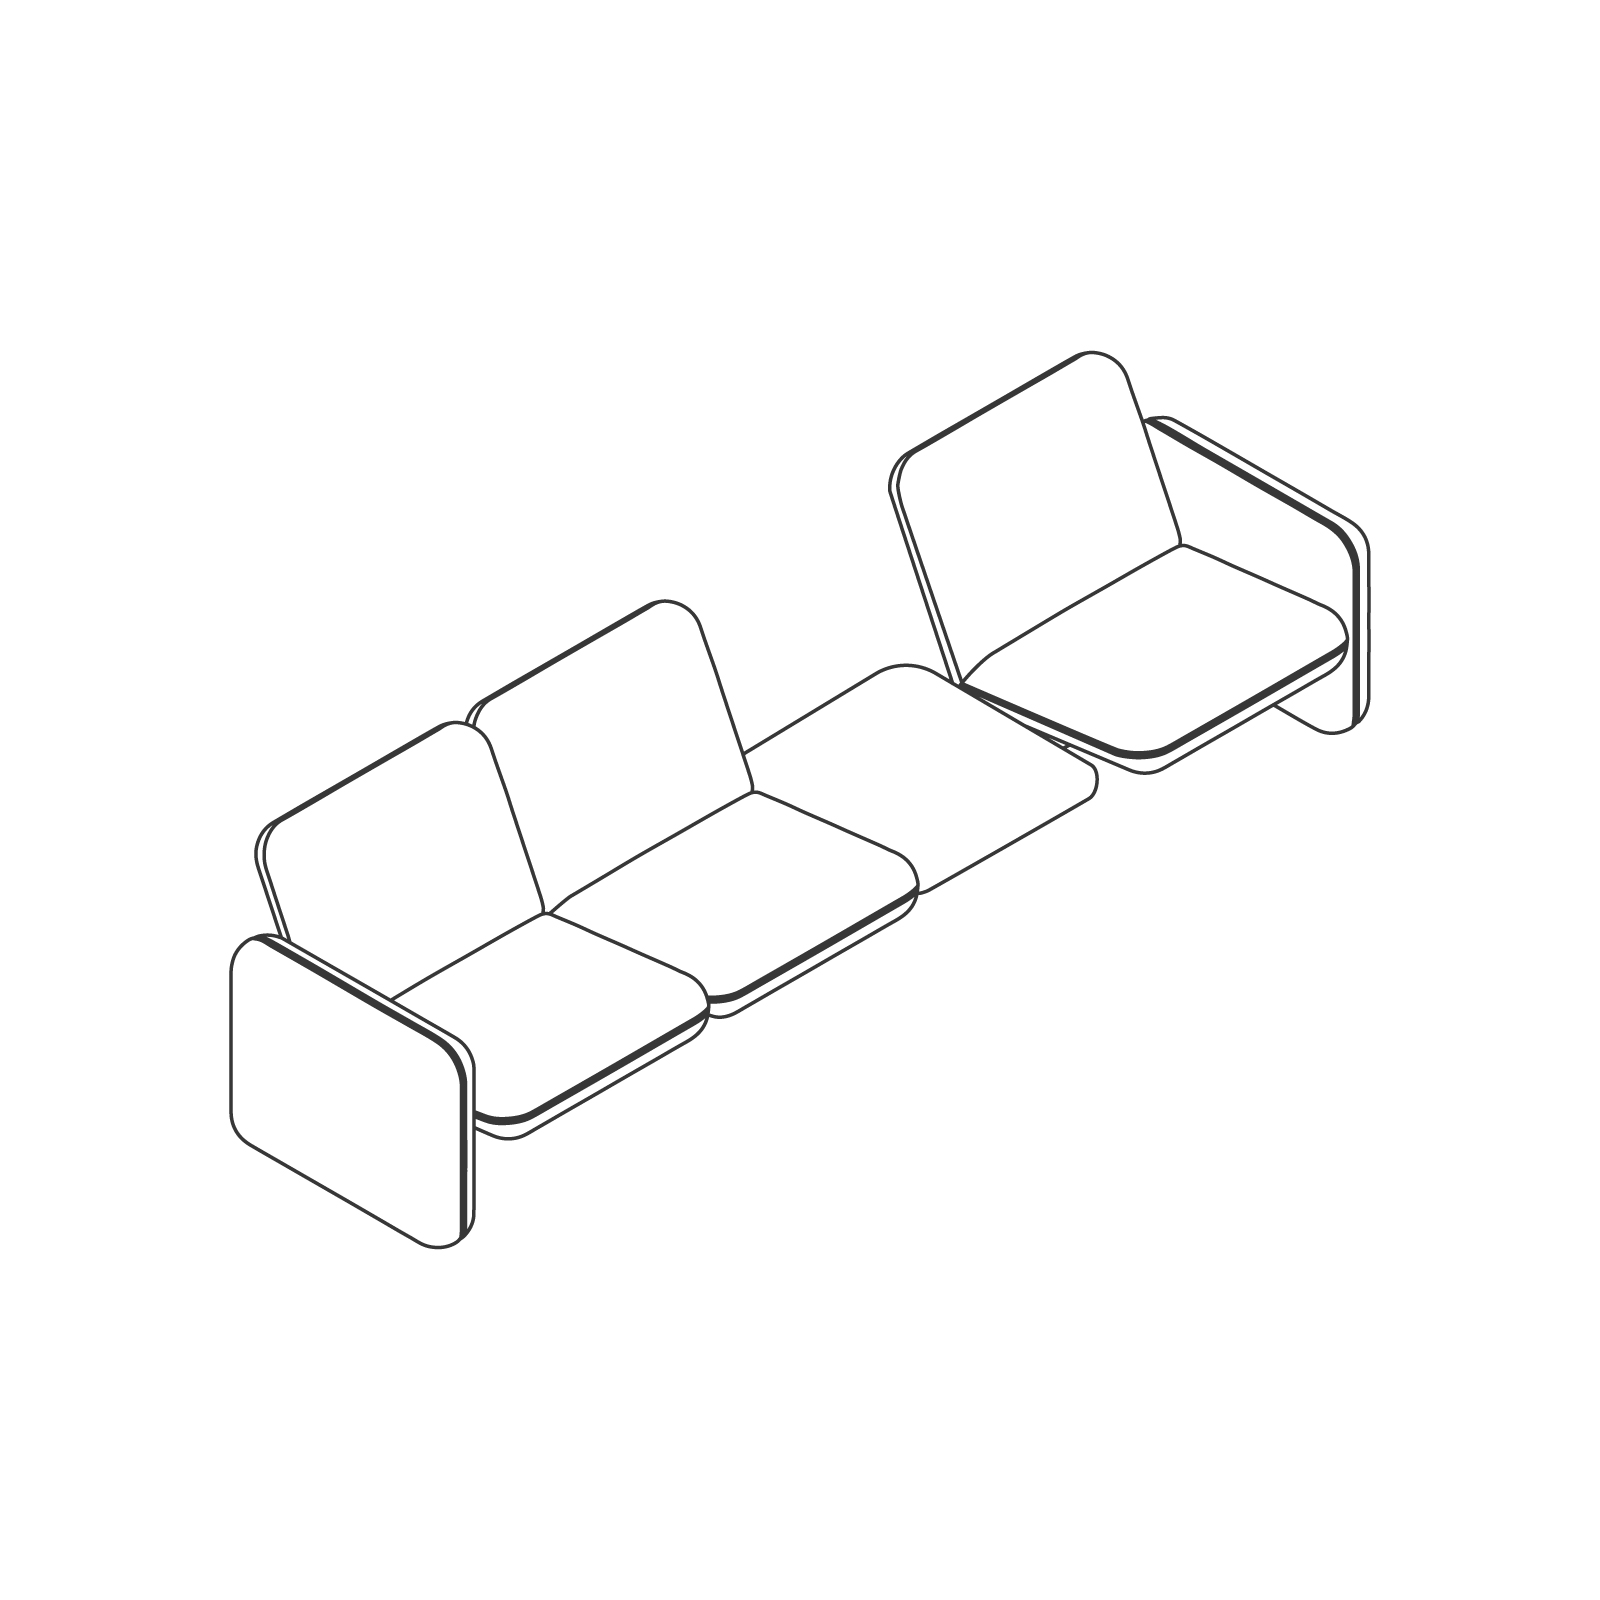 Dibujo en líneas - Conjunto de sofás modulares Wilkes – 1 asiento a la izquierda – Mesa –2 asientos a la derecha